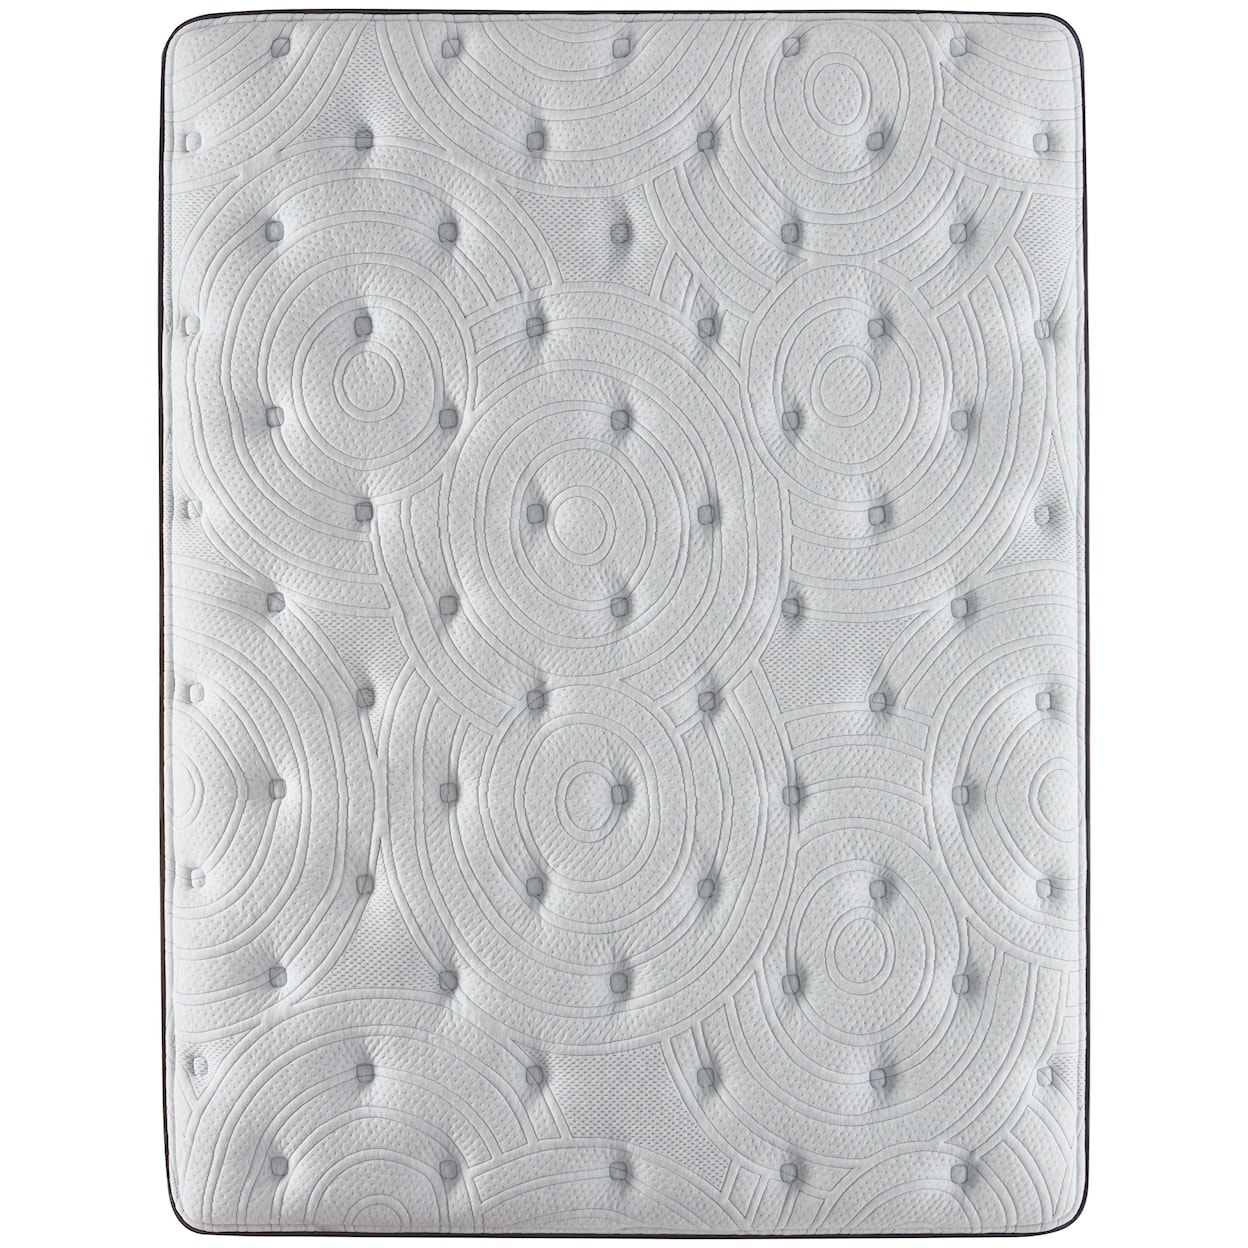 Serta Renewed Sleep Plush PT King 17" Plush Pillow Top Low Profile Set